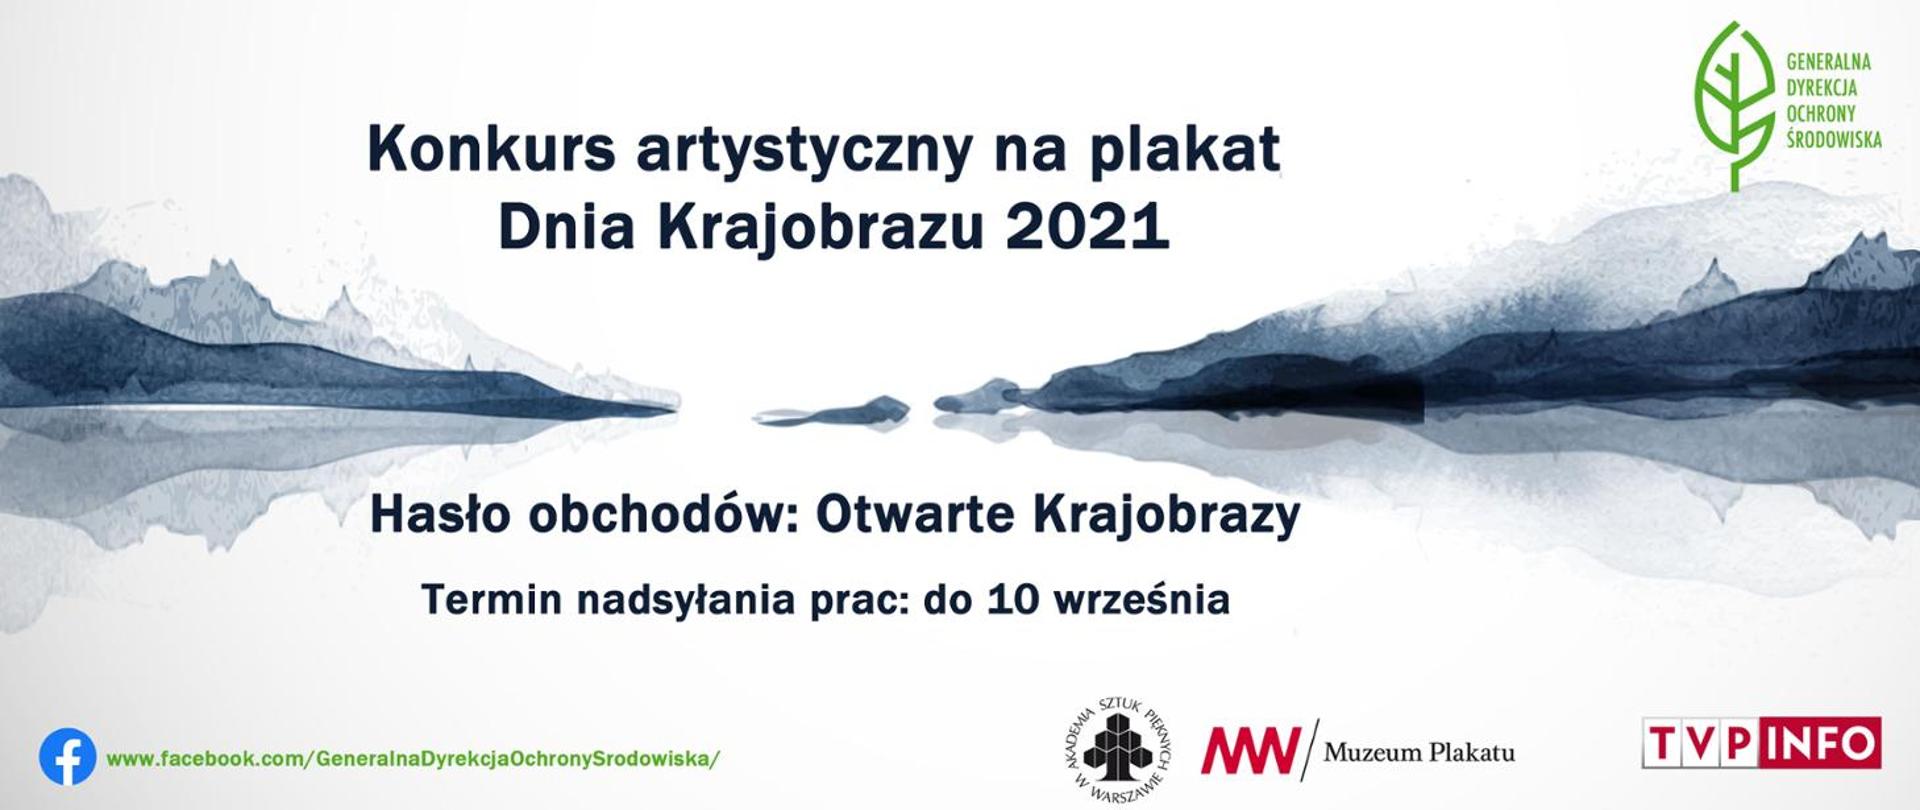 Banner reklamowy konkursu - Konkurs artystyczny na plakat Dnia Krajobrazu 2021